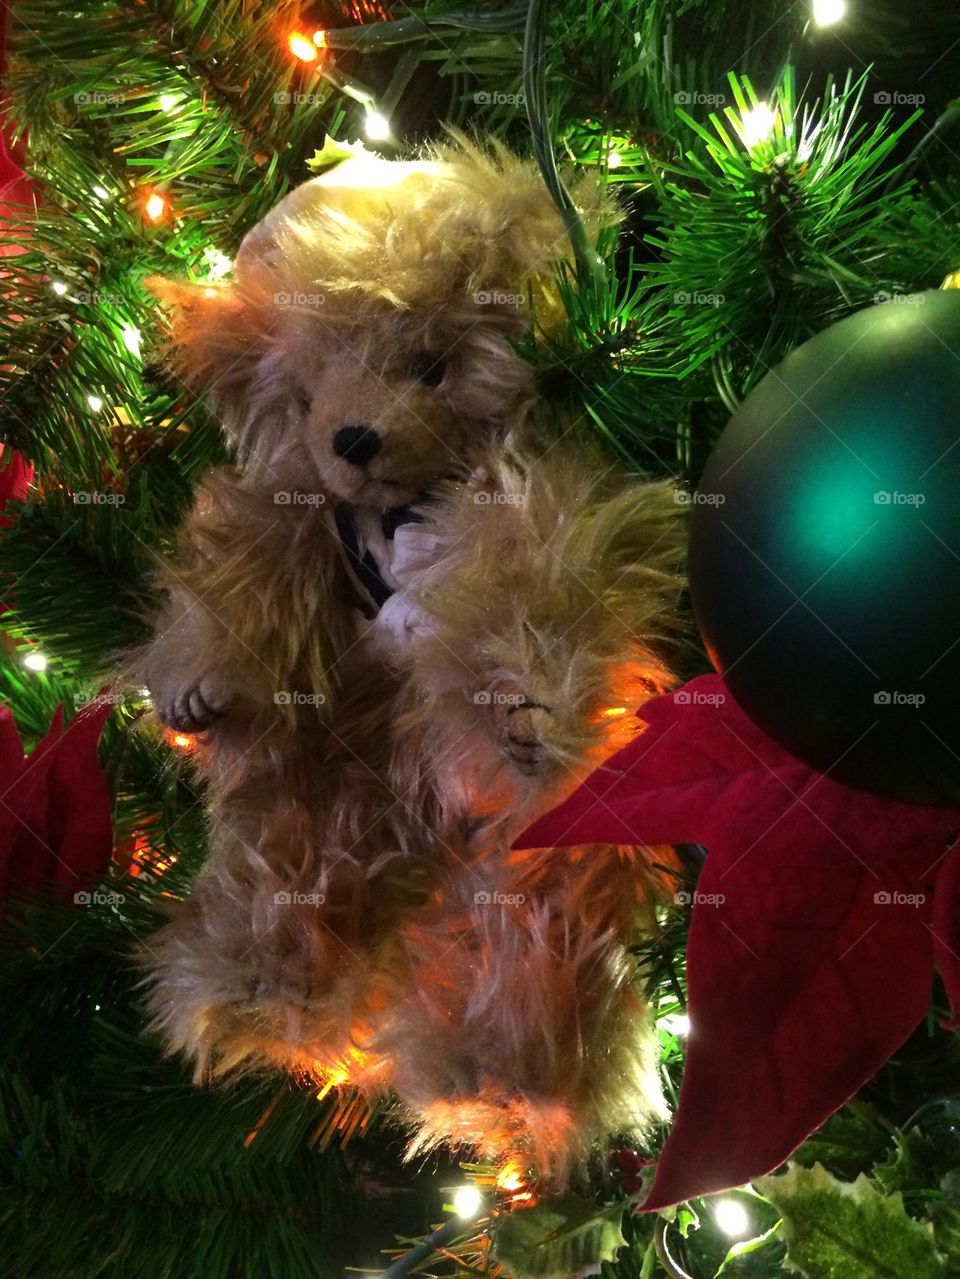 Christmas tree teddy bear